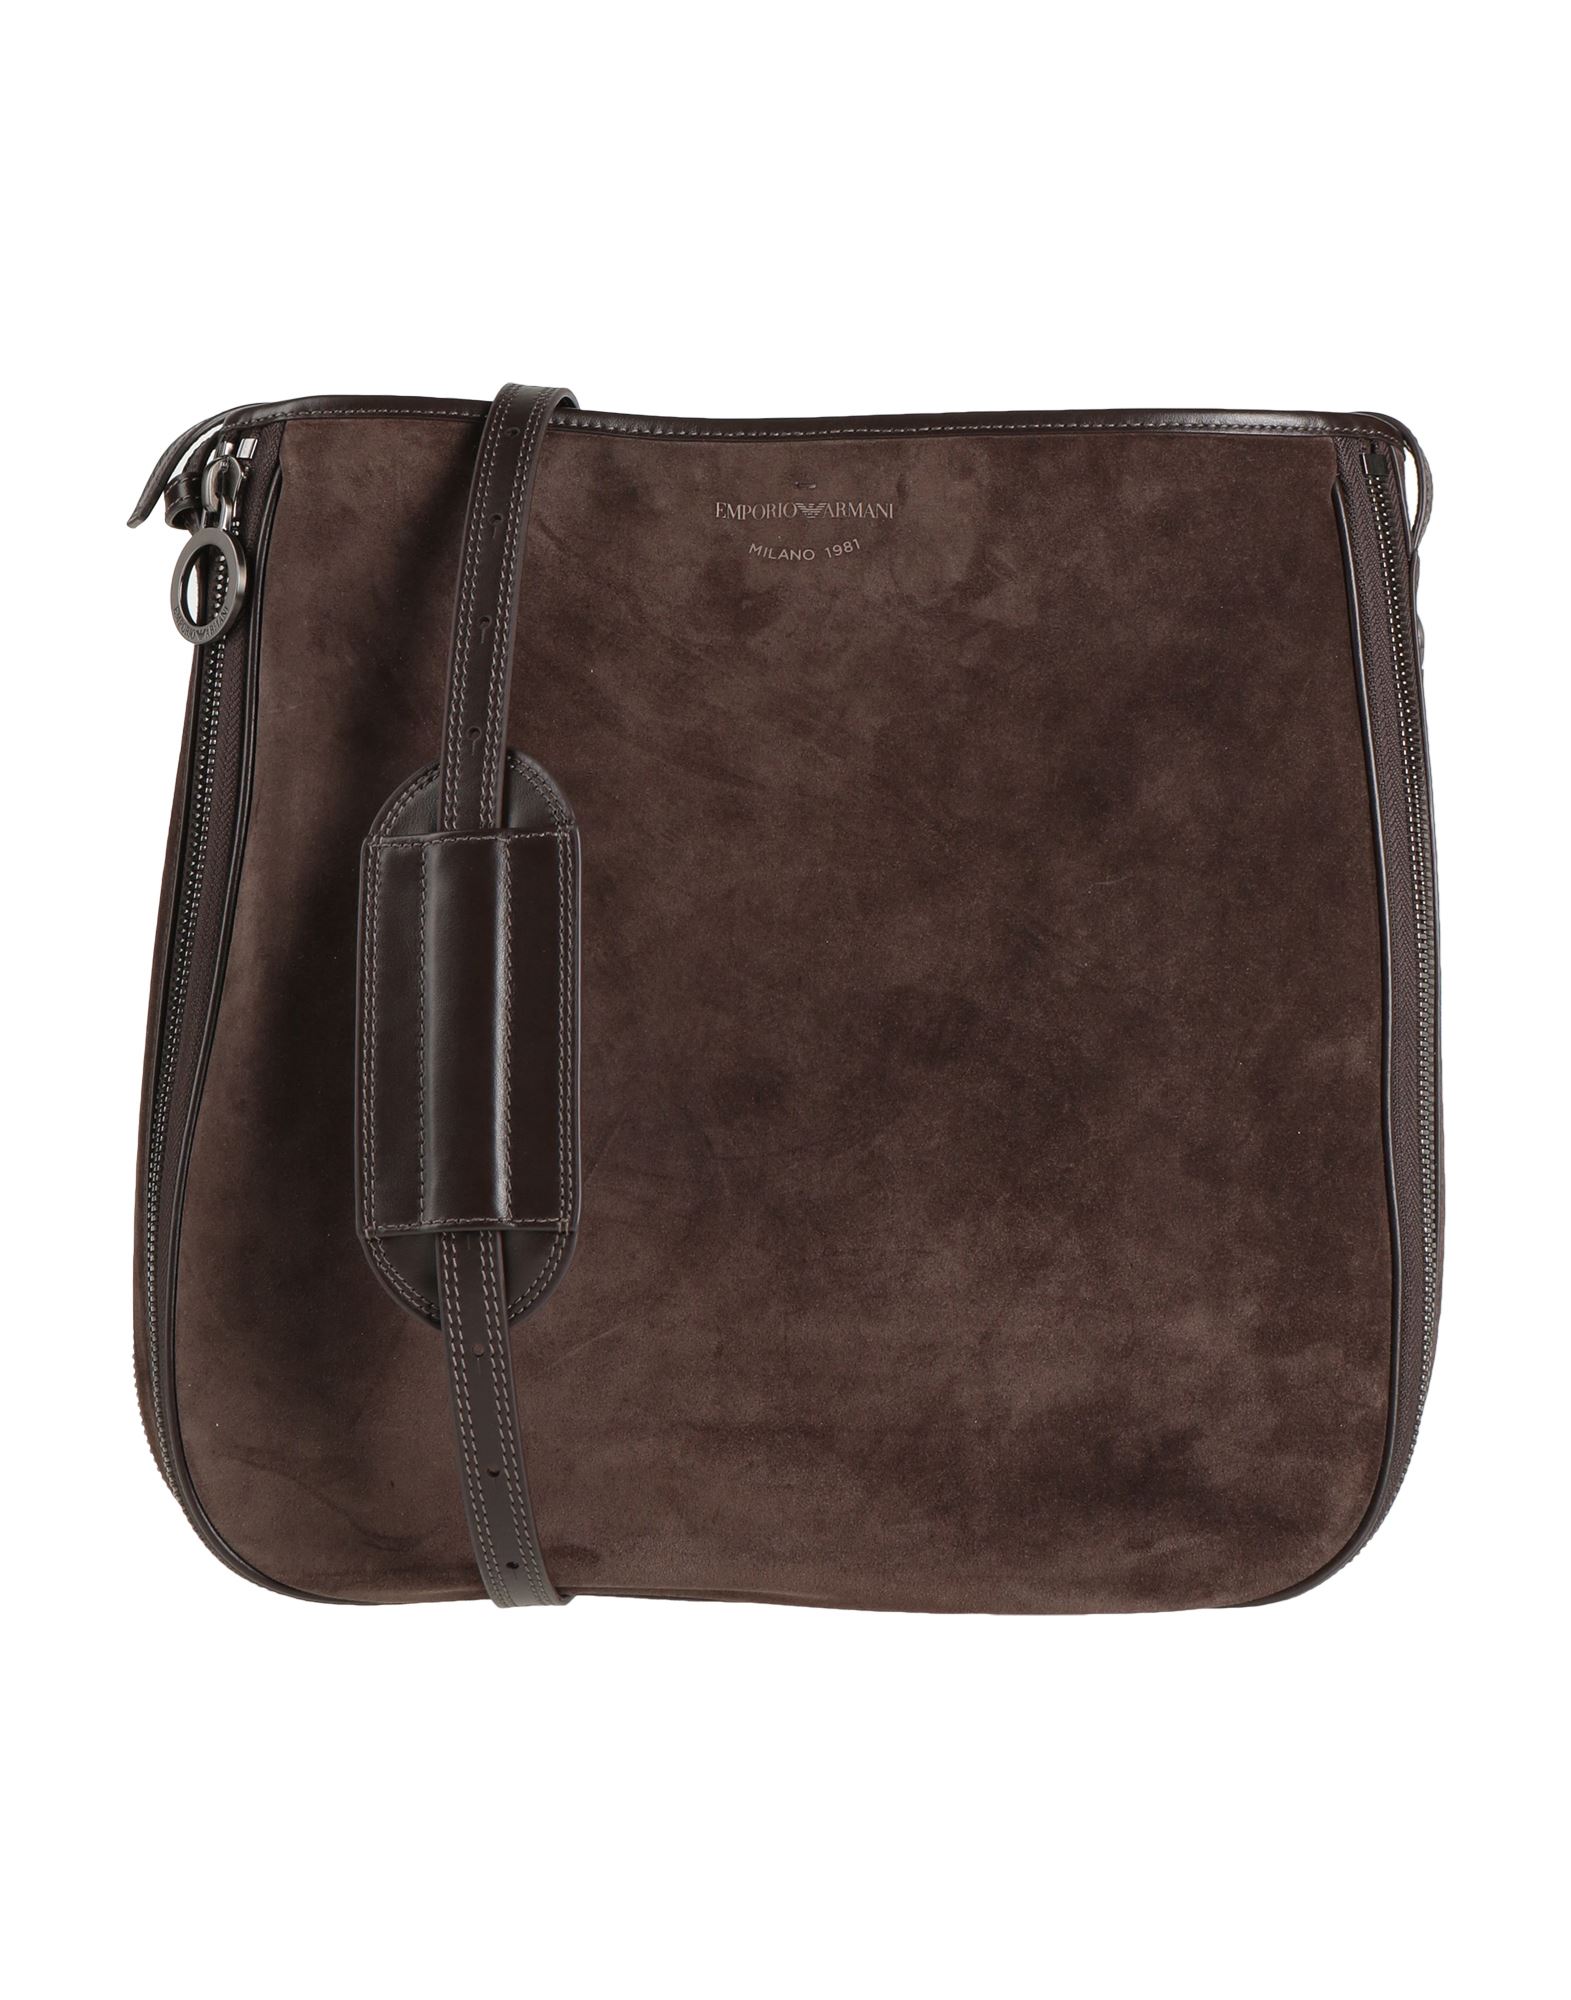 Emporio Armani Handbags In Brown